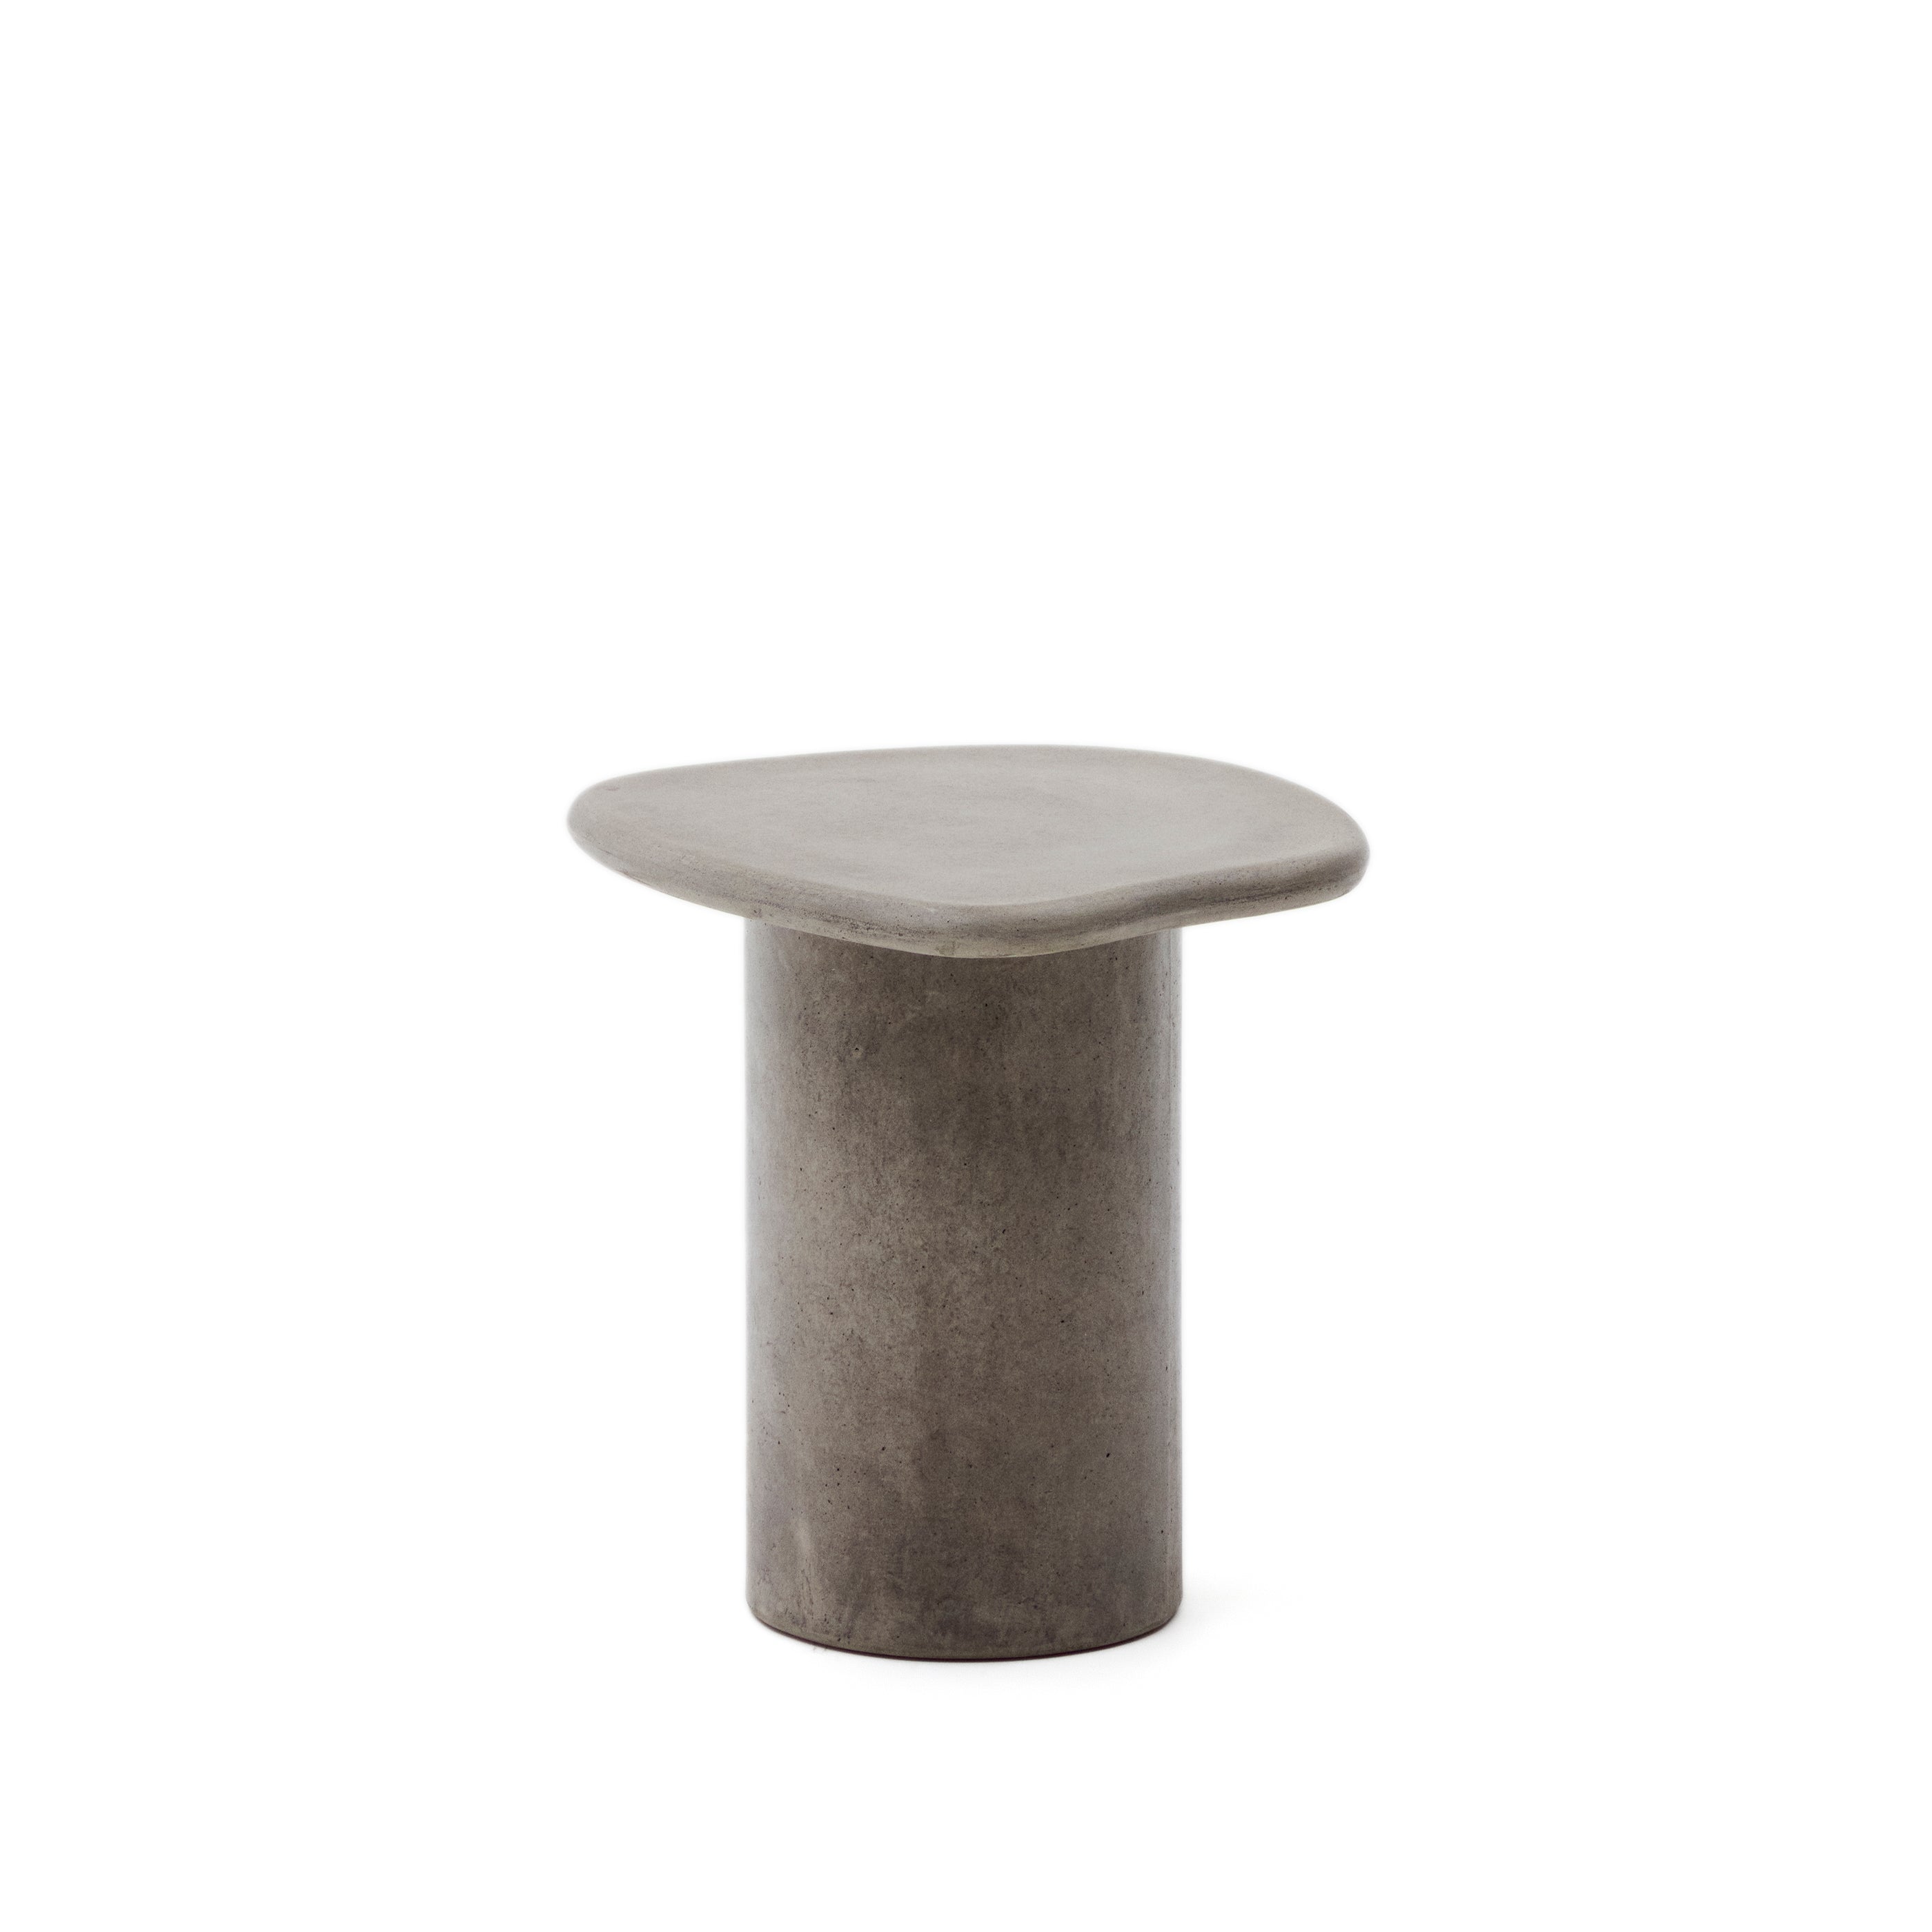 Macarella cement oldalsó asztal, 48 x 47 cm